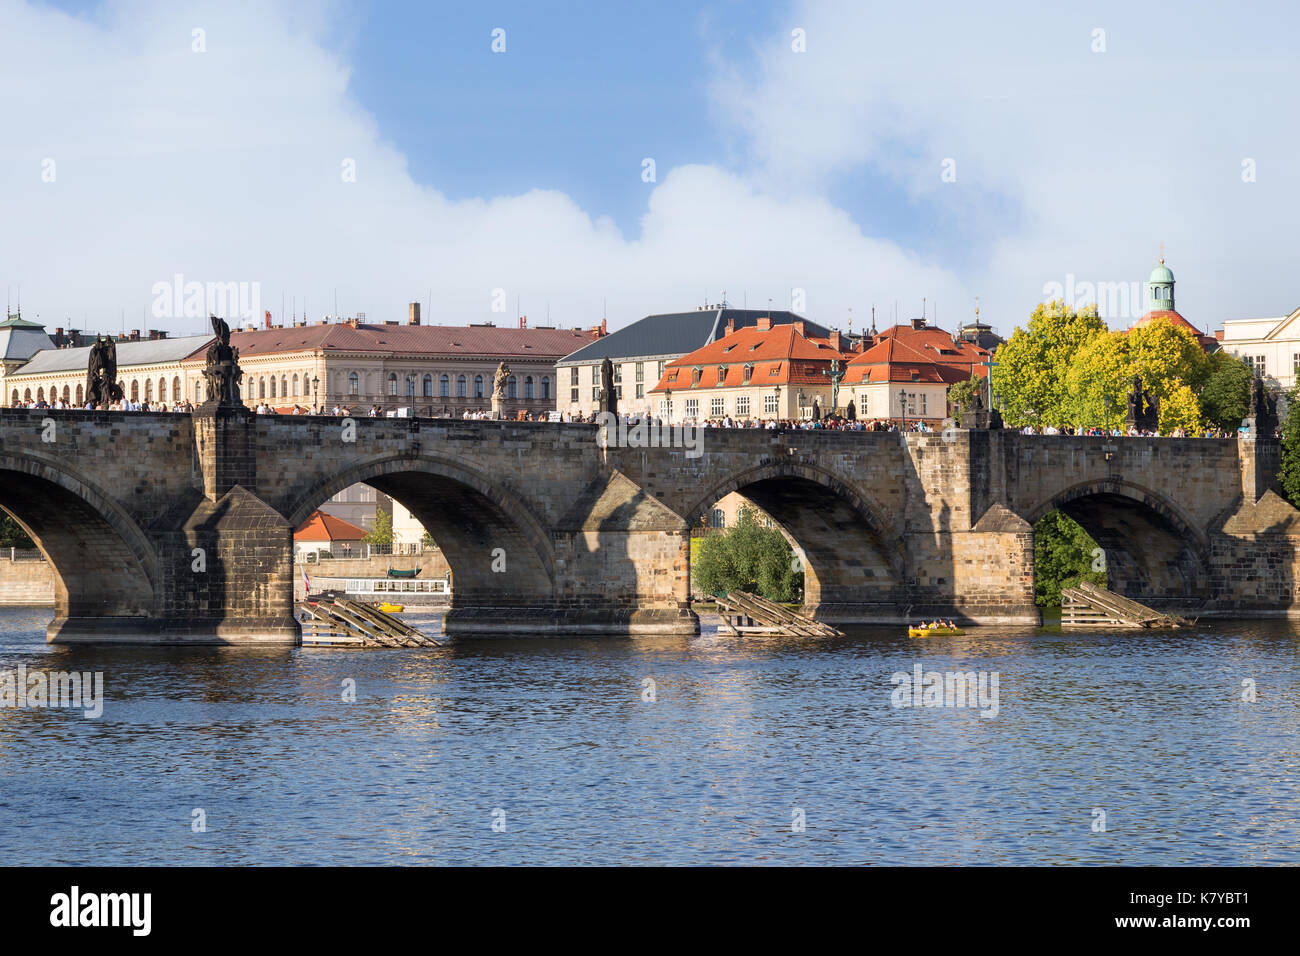 Die Karlsbrücke (Karluv most), Moldau und alte Gebäude in der Altstadt von Prag, tschechische Republik. Stockfoto